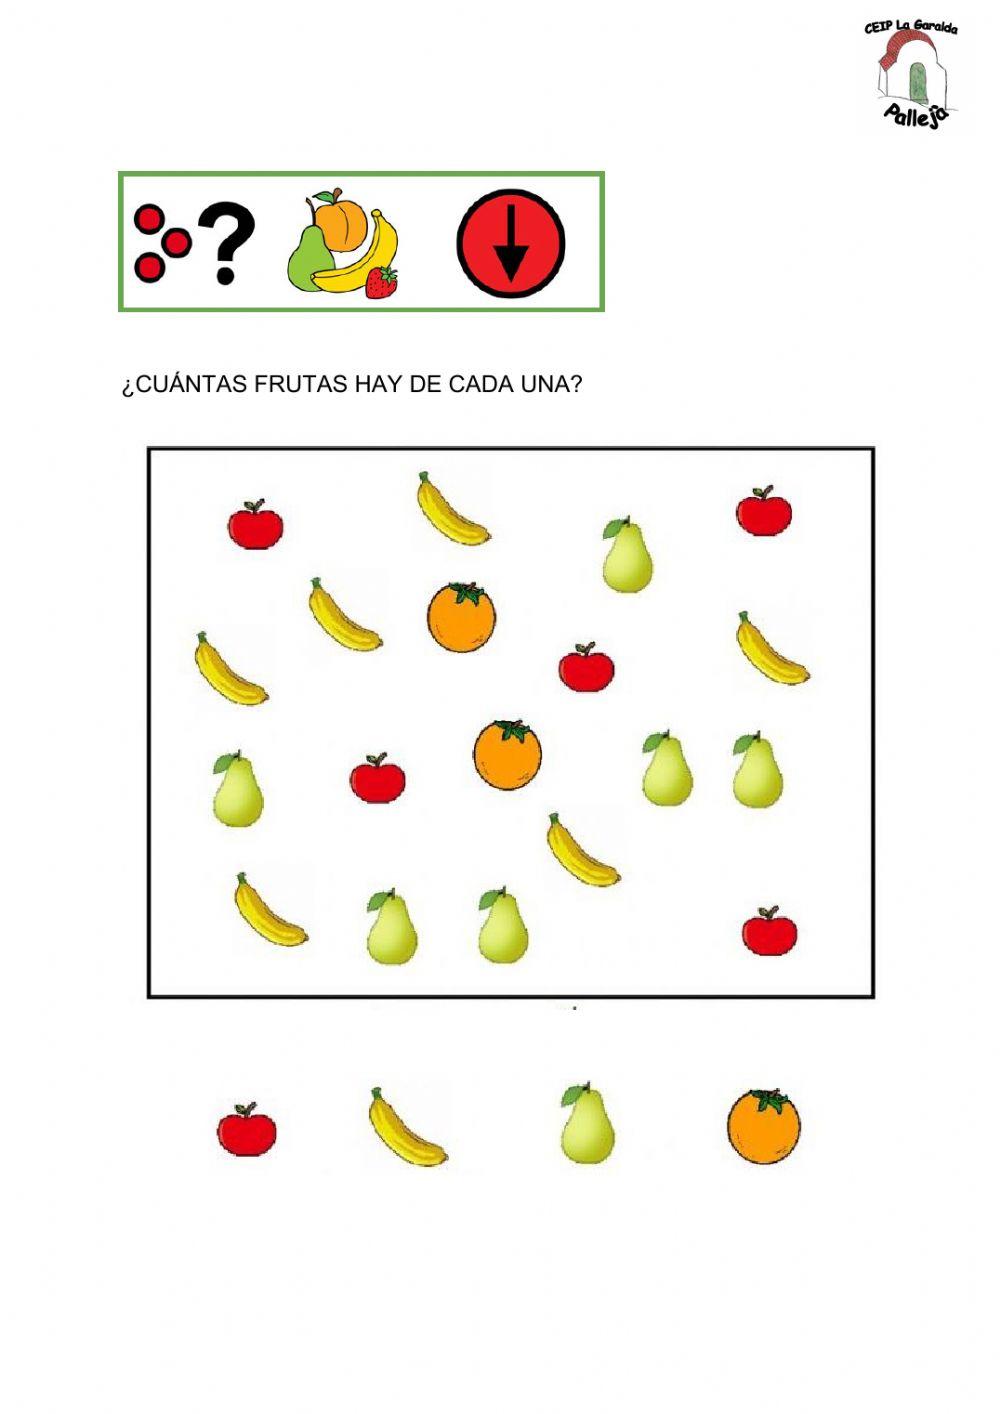 ¿Cuántasfrutas hay de cada una?